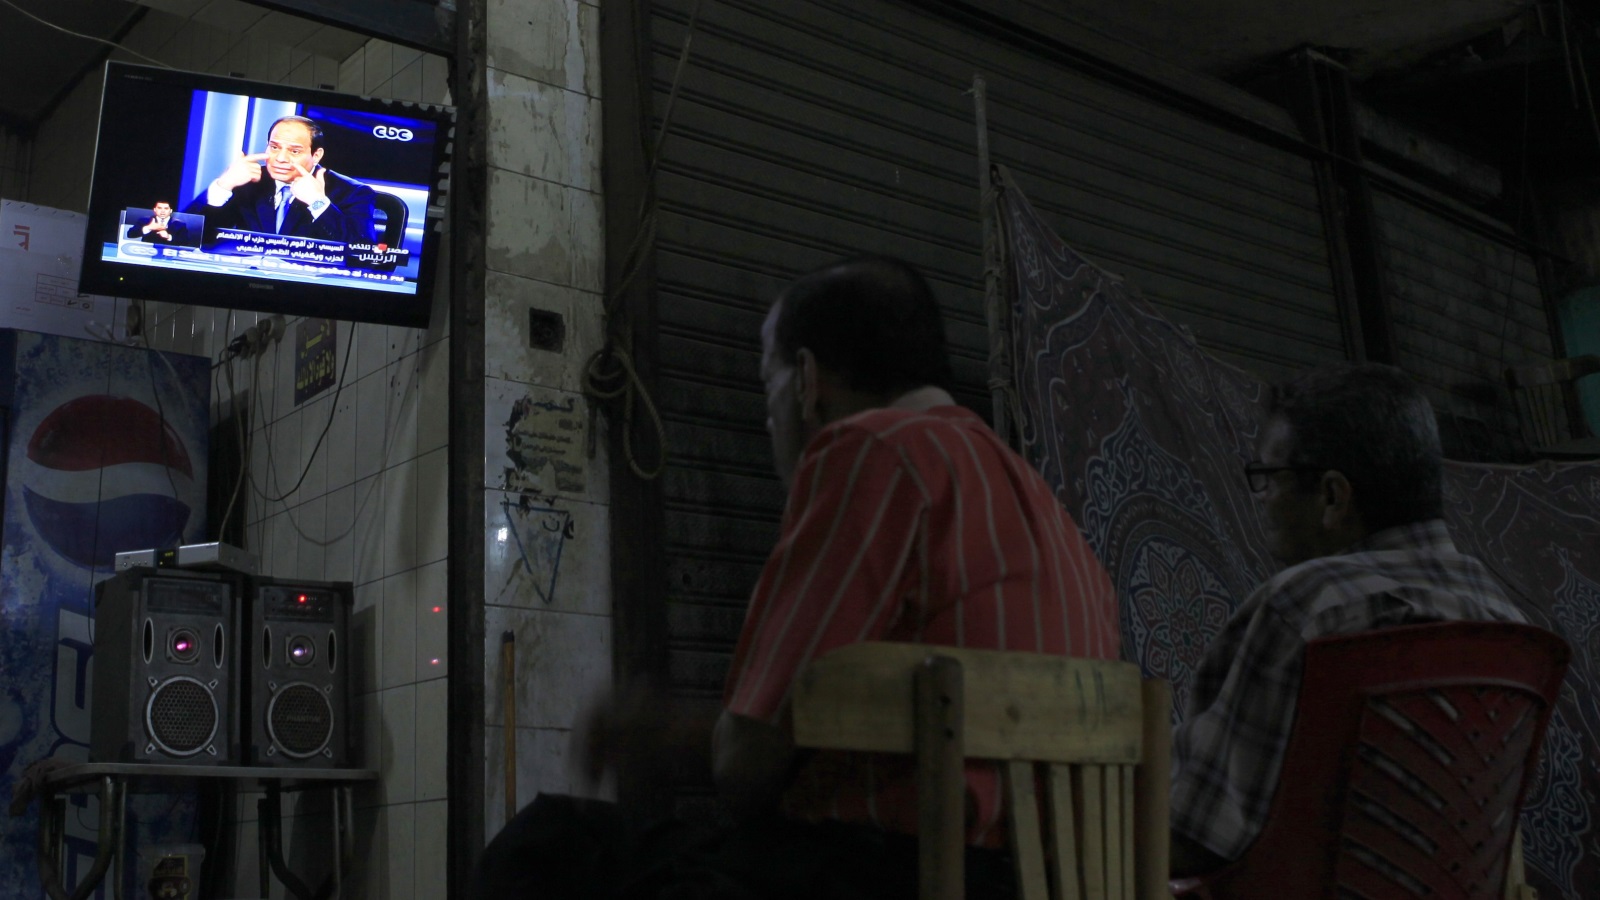 ‪الإعلام المصري تحول إلى أداة دعائية للنظام‬ الإعلام المصري تحول إلى أداة دعائية للنظام (رويترز)